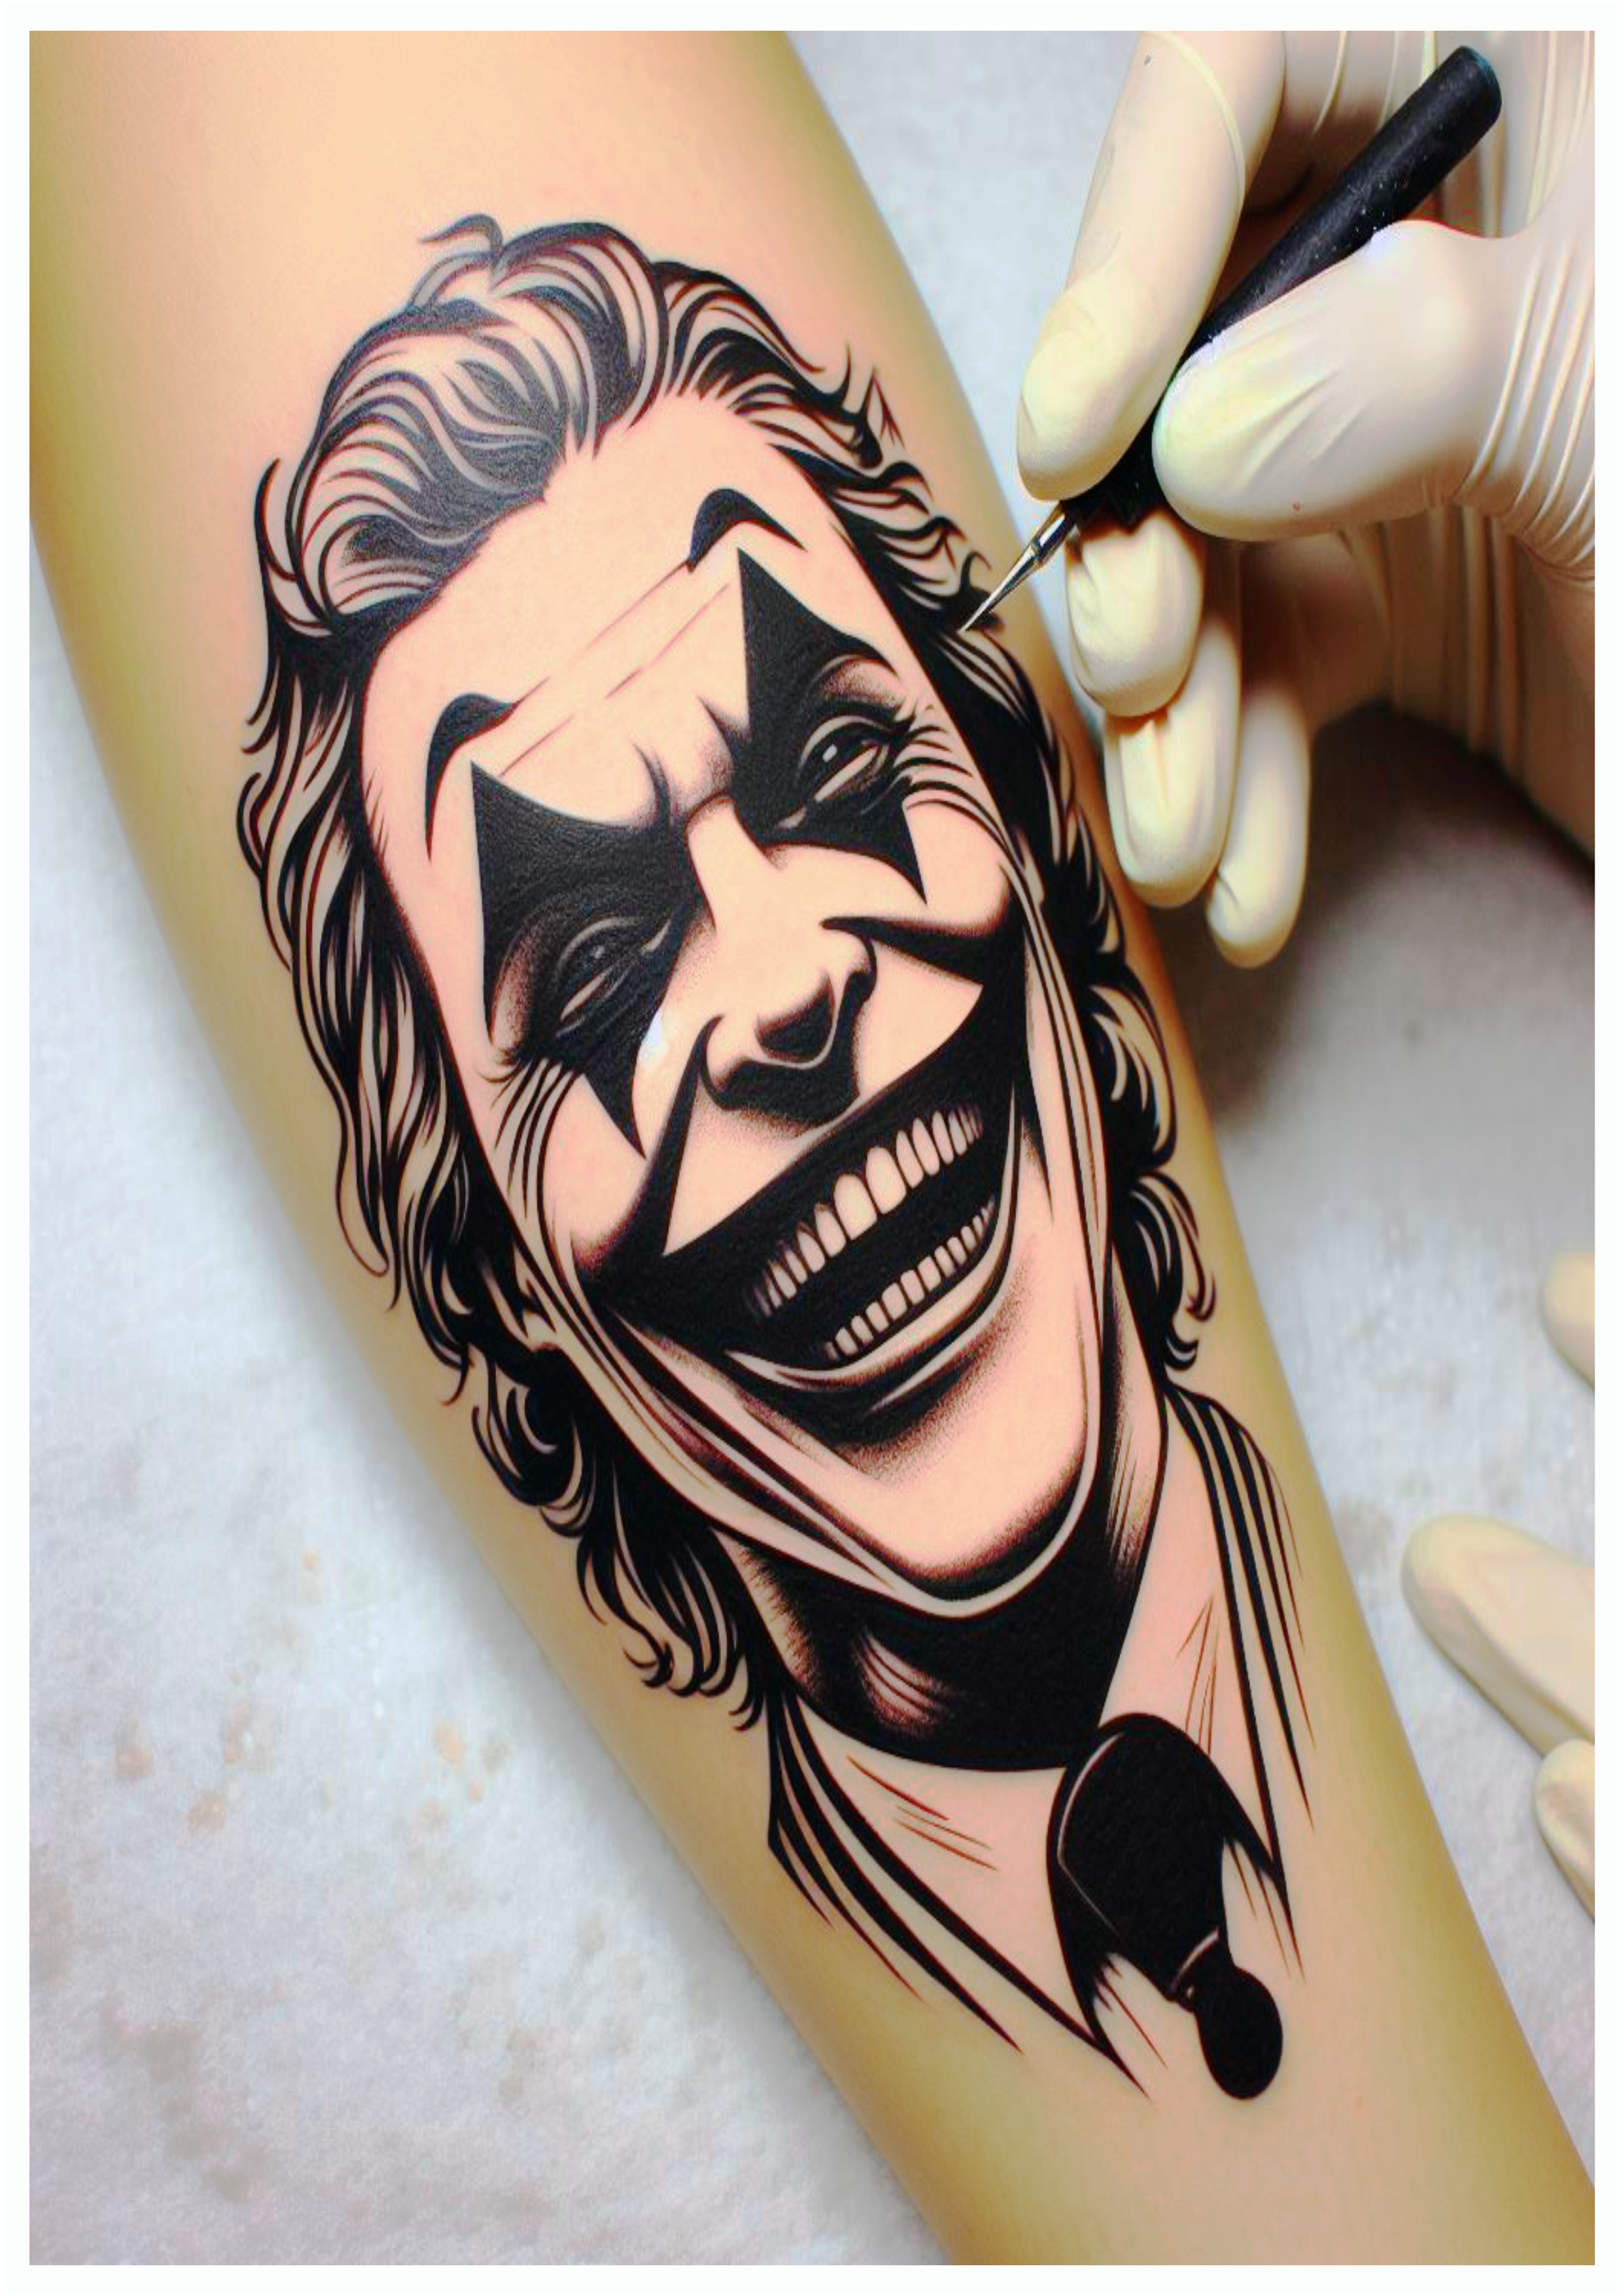 Tatuagem do coringa joker no braço dando risada assustadora png